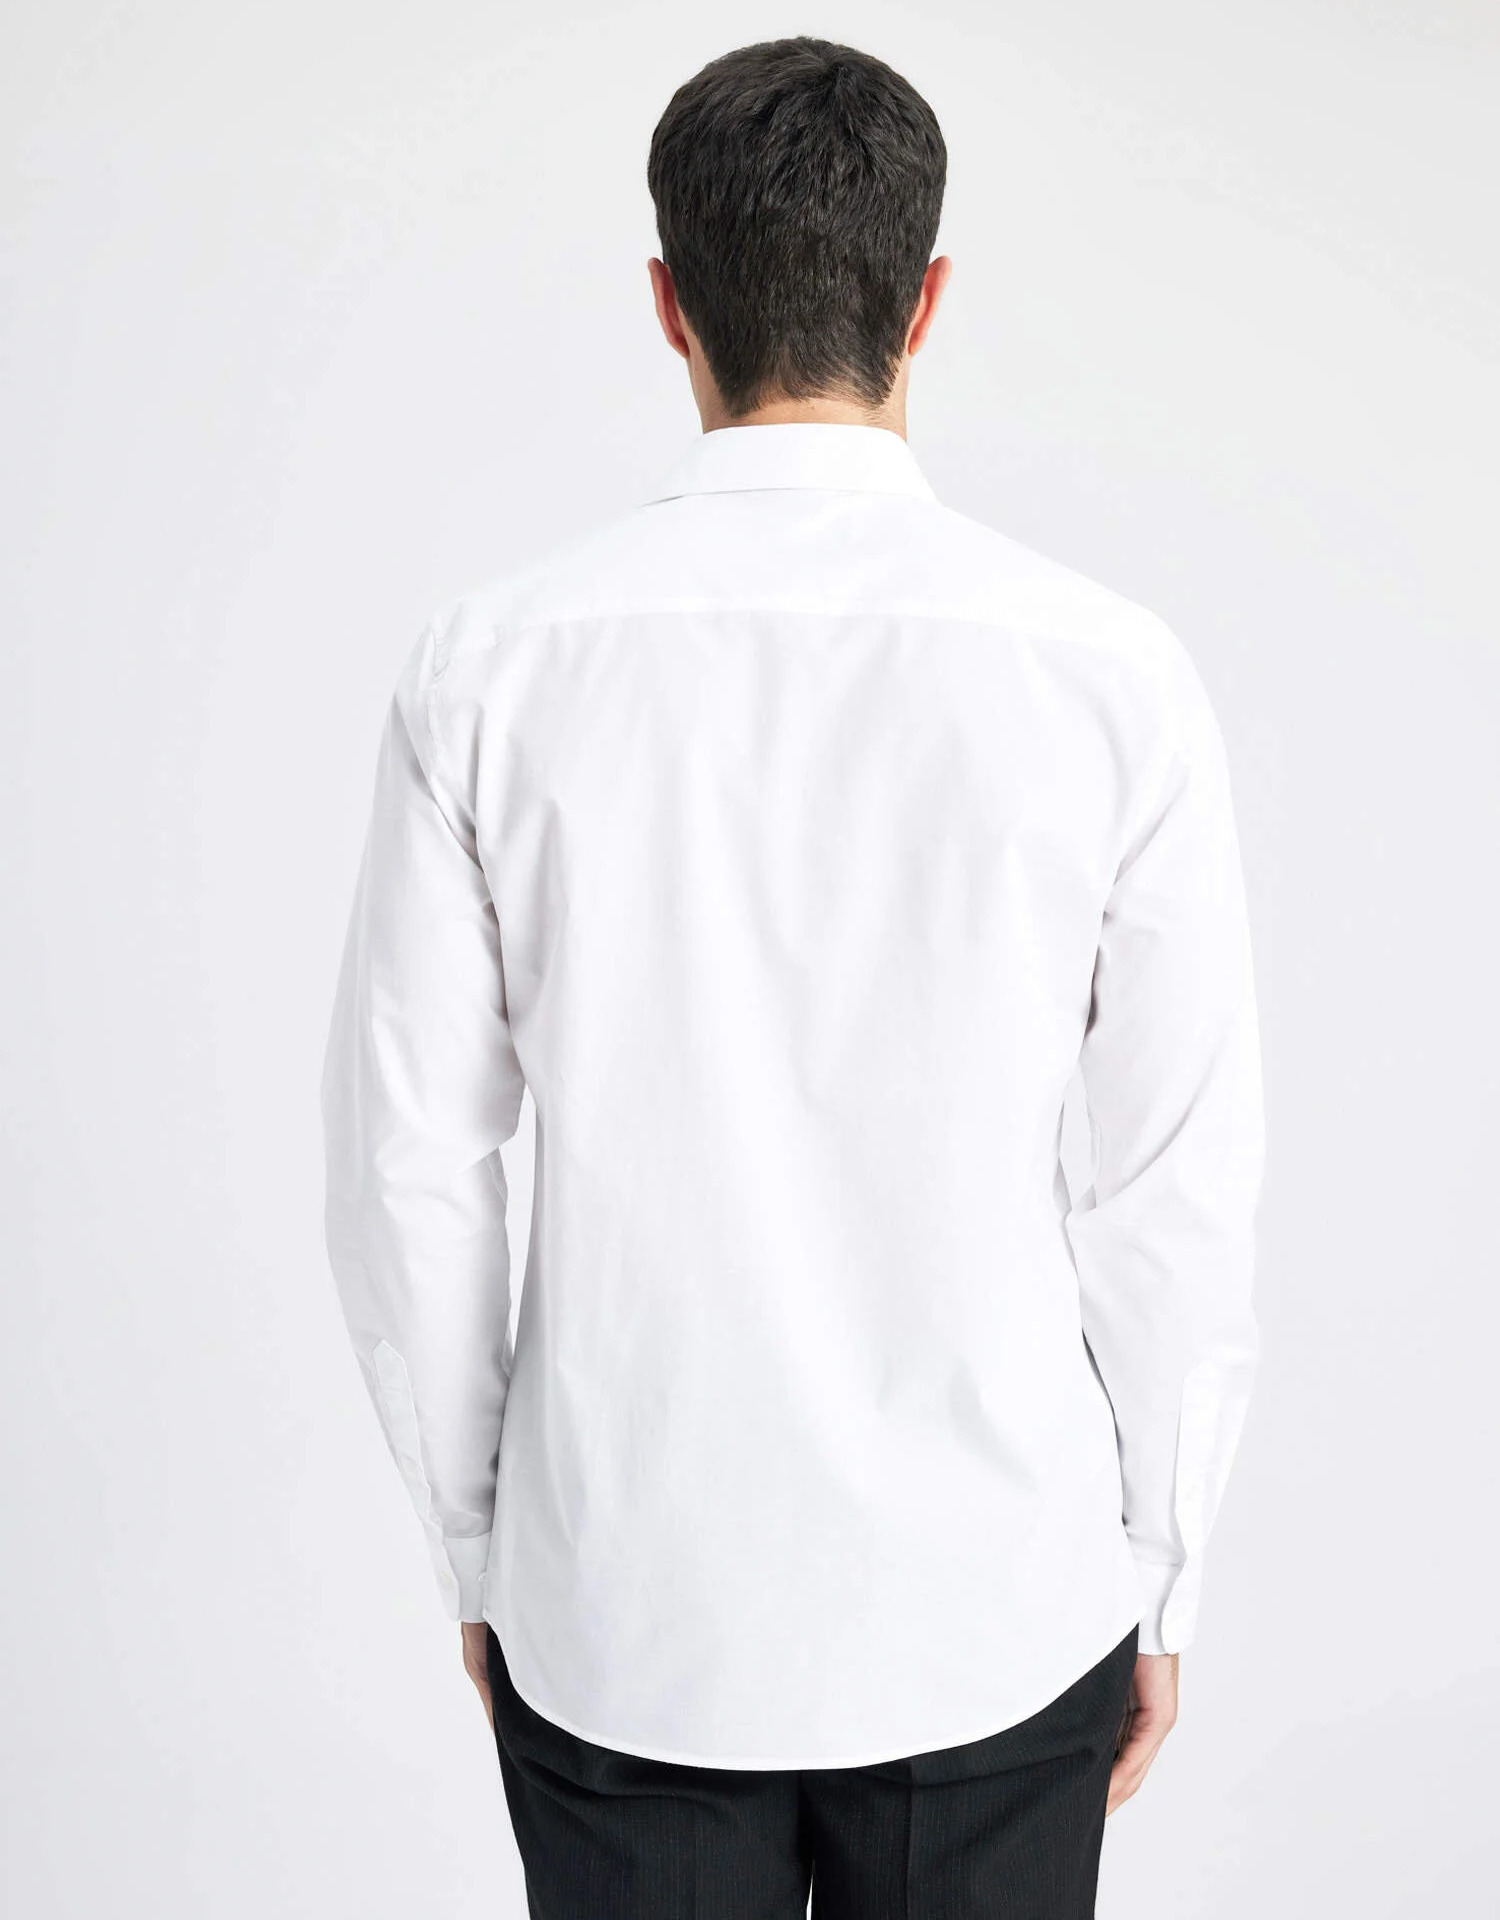  پیراهن سفید آستین بلند مردانه دفکتو 